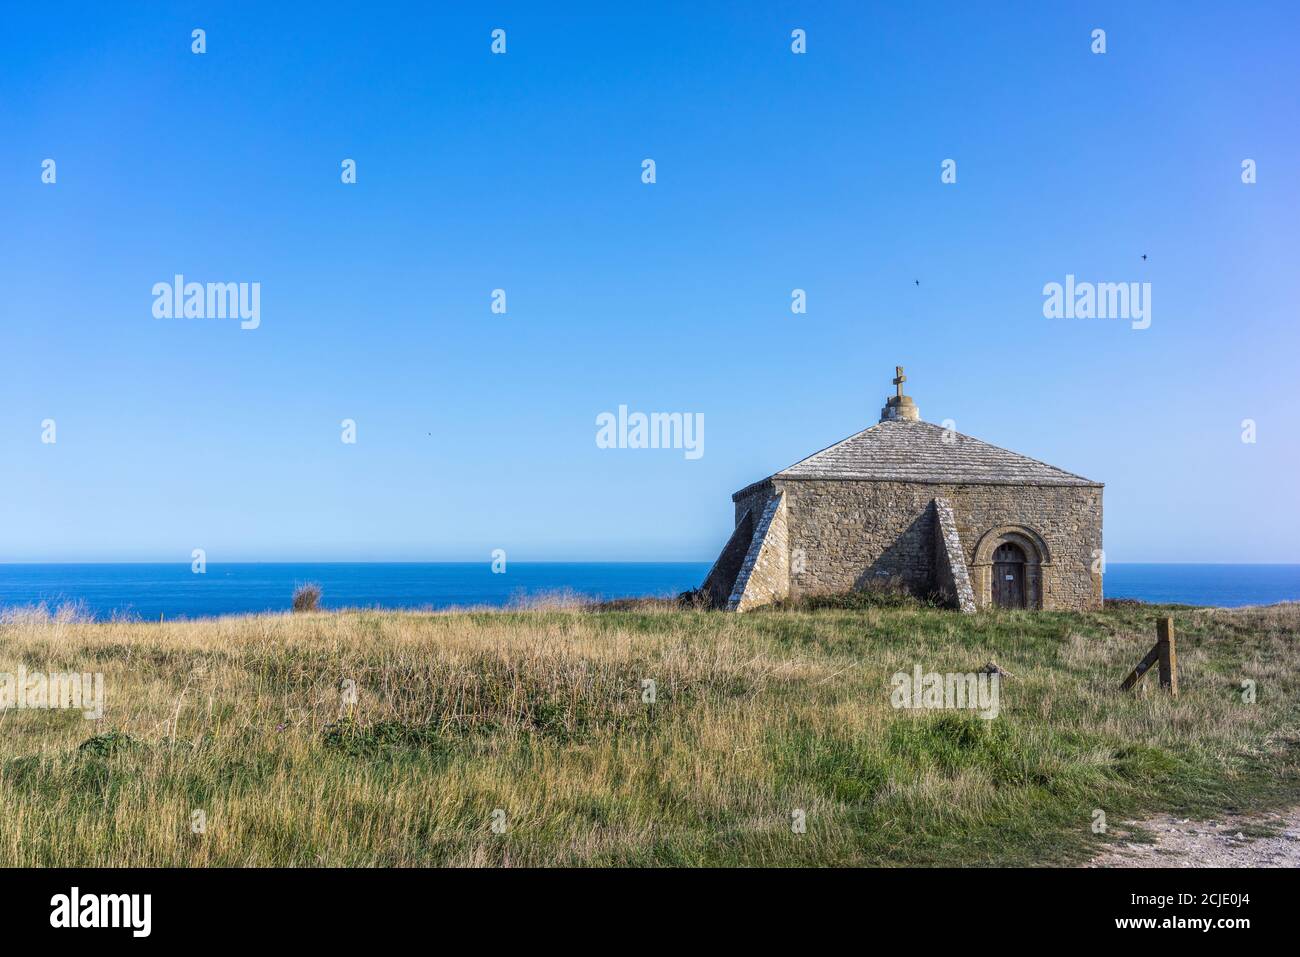 St. Aldhelm’s Chapel - una piccola chiesa del XII secolo situata a St. Aldhelm’s Head, vicino a Swanage, sulla Jurassic Coast, Dorset, Inghilterra, Regno Unito Foto Stock